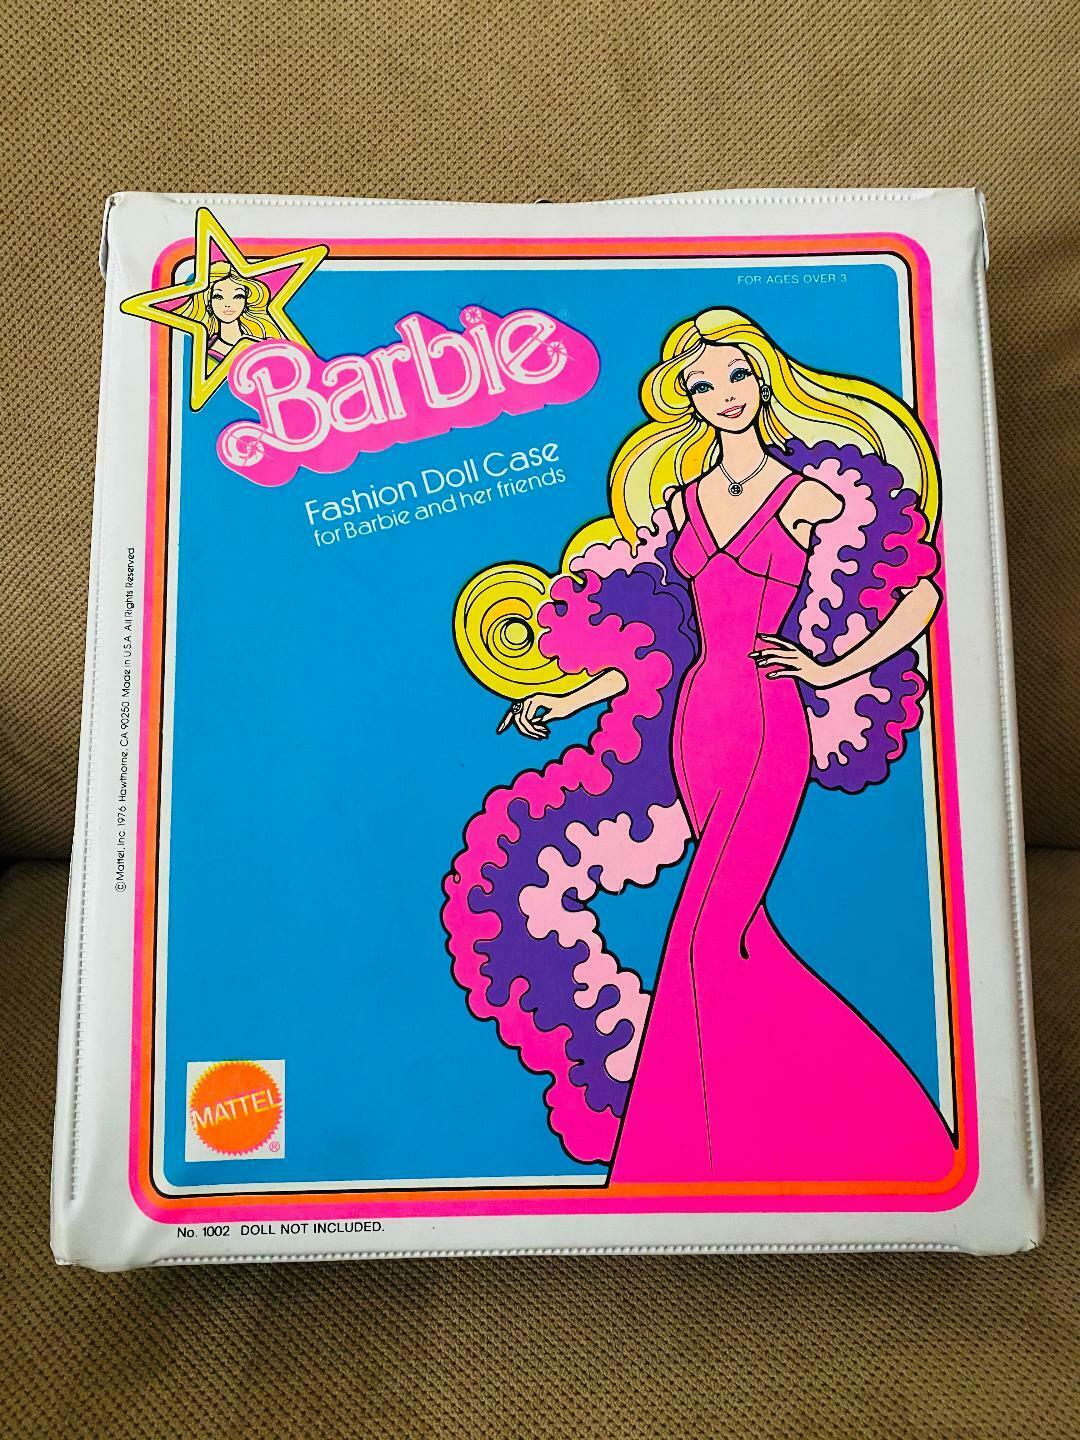 Vintage Superstar Barbie White Fashion Doll Case 1976 Mattel Trunk Excellent Fun